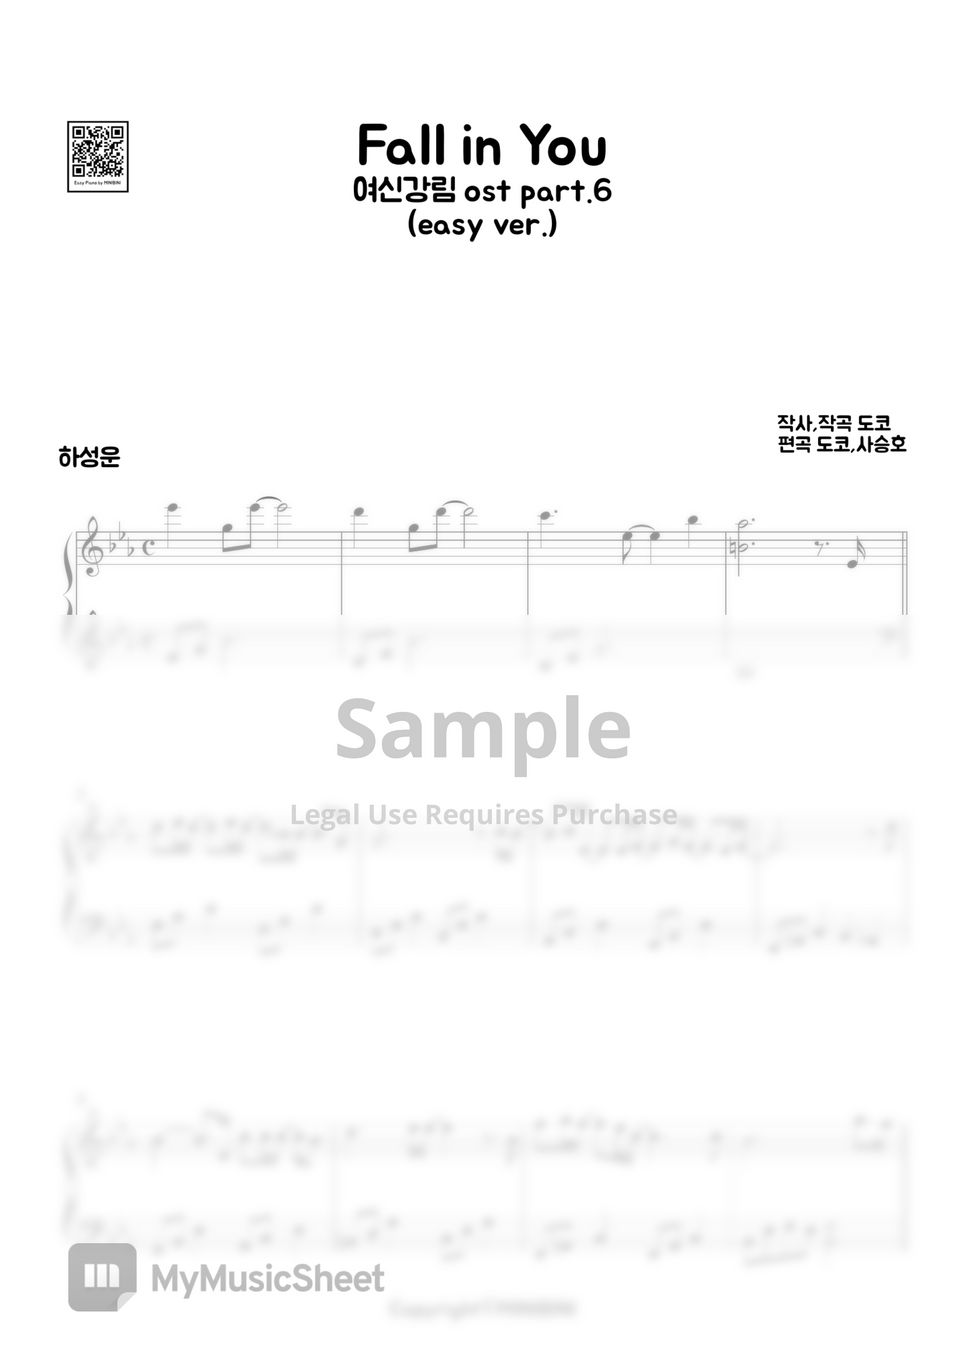 HA SUNGWOON (하성운) - FALL IN LOVE [True Beauty, 여신강림 OST Pt.6] (Easy Version) by MINIBINI